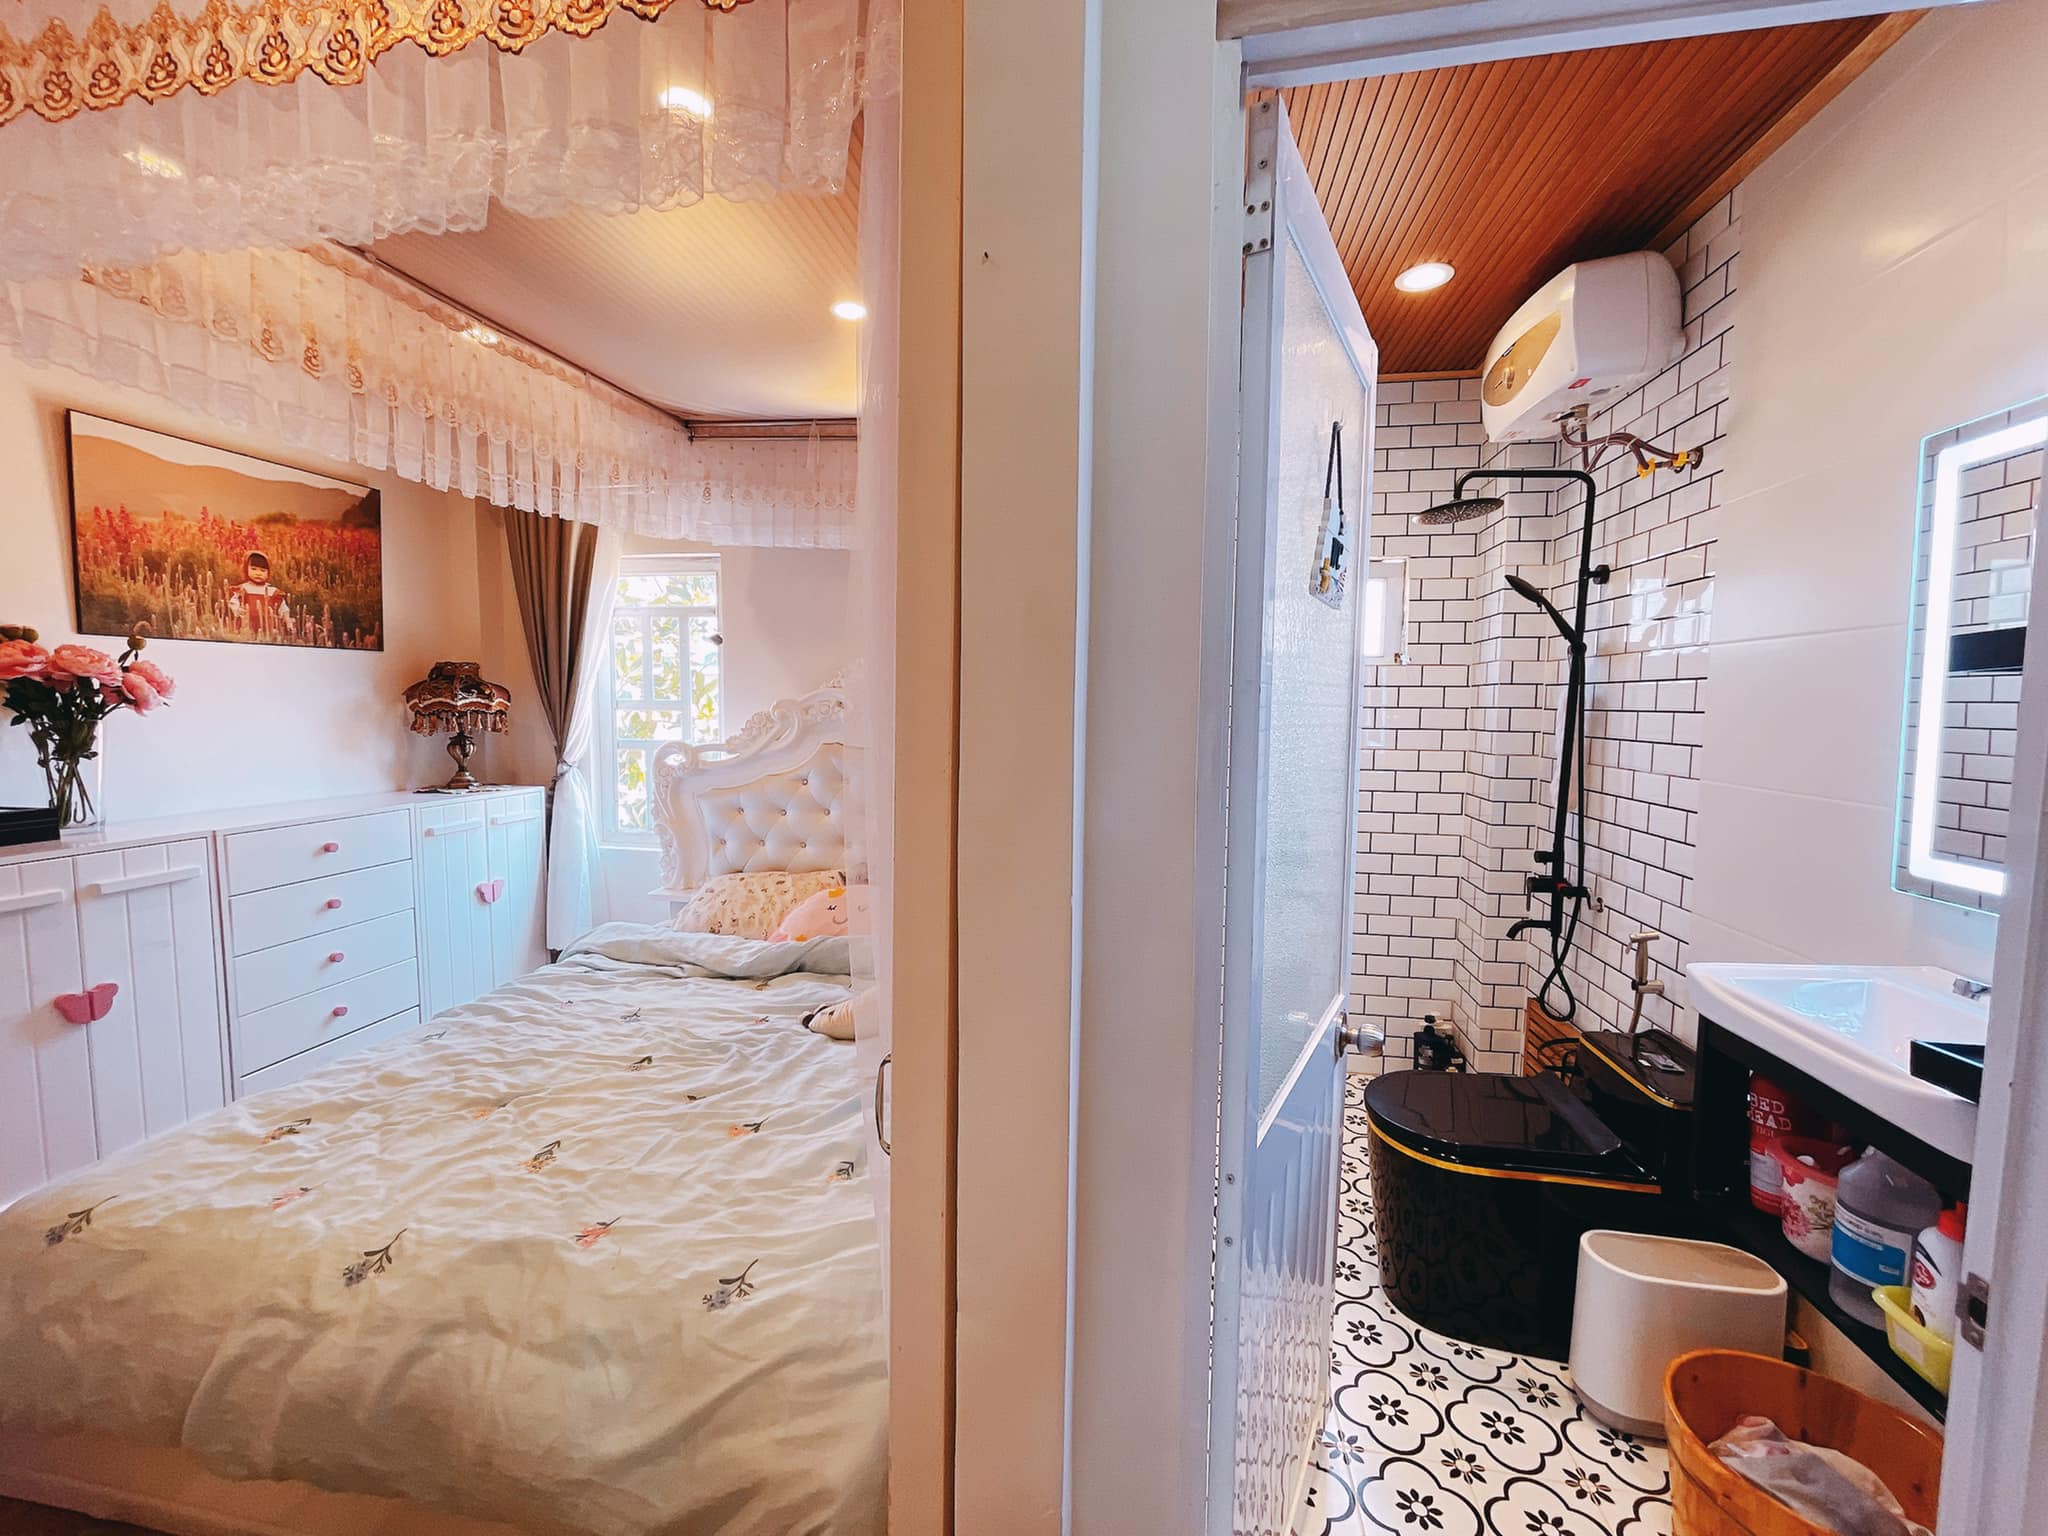 Phòng ngủ, Phòng tắm - Cải tạo nhà nhỏ tại Đà Lạt khéo léo gia tăng thêm không gian 